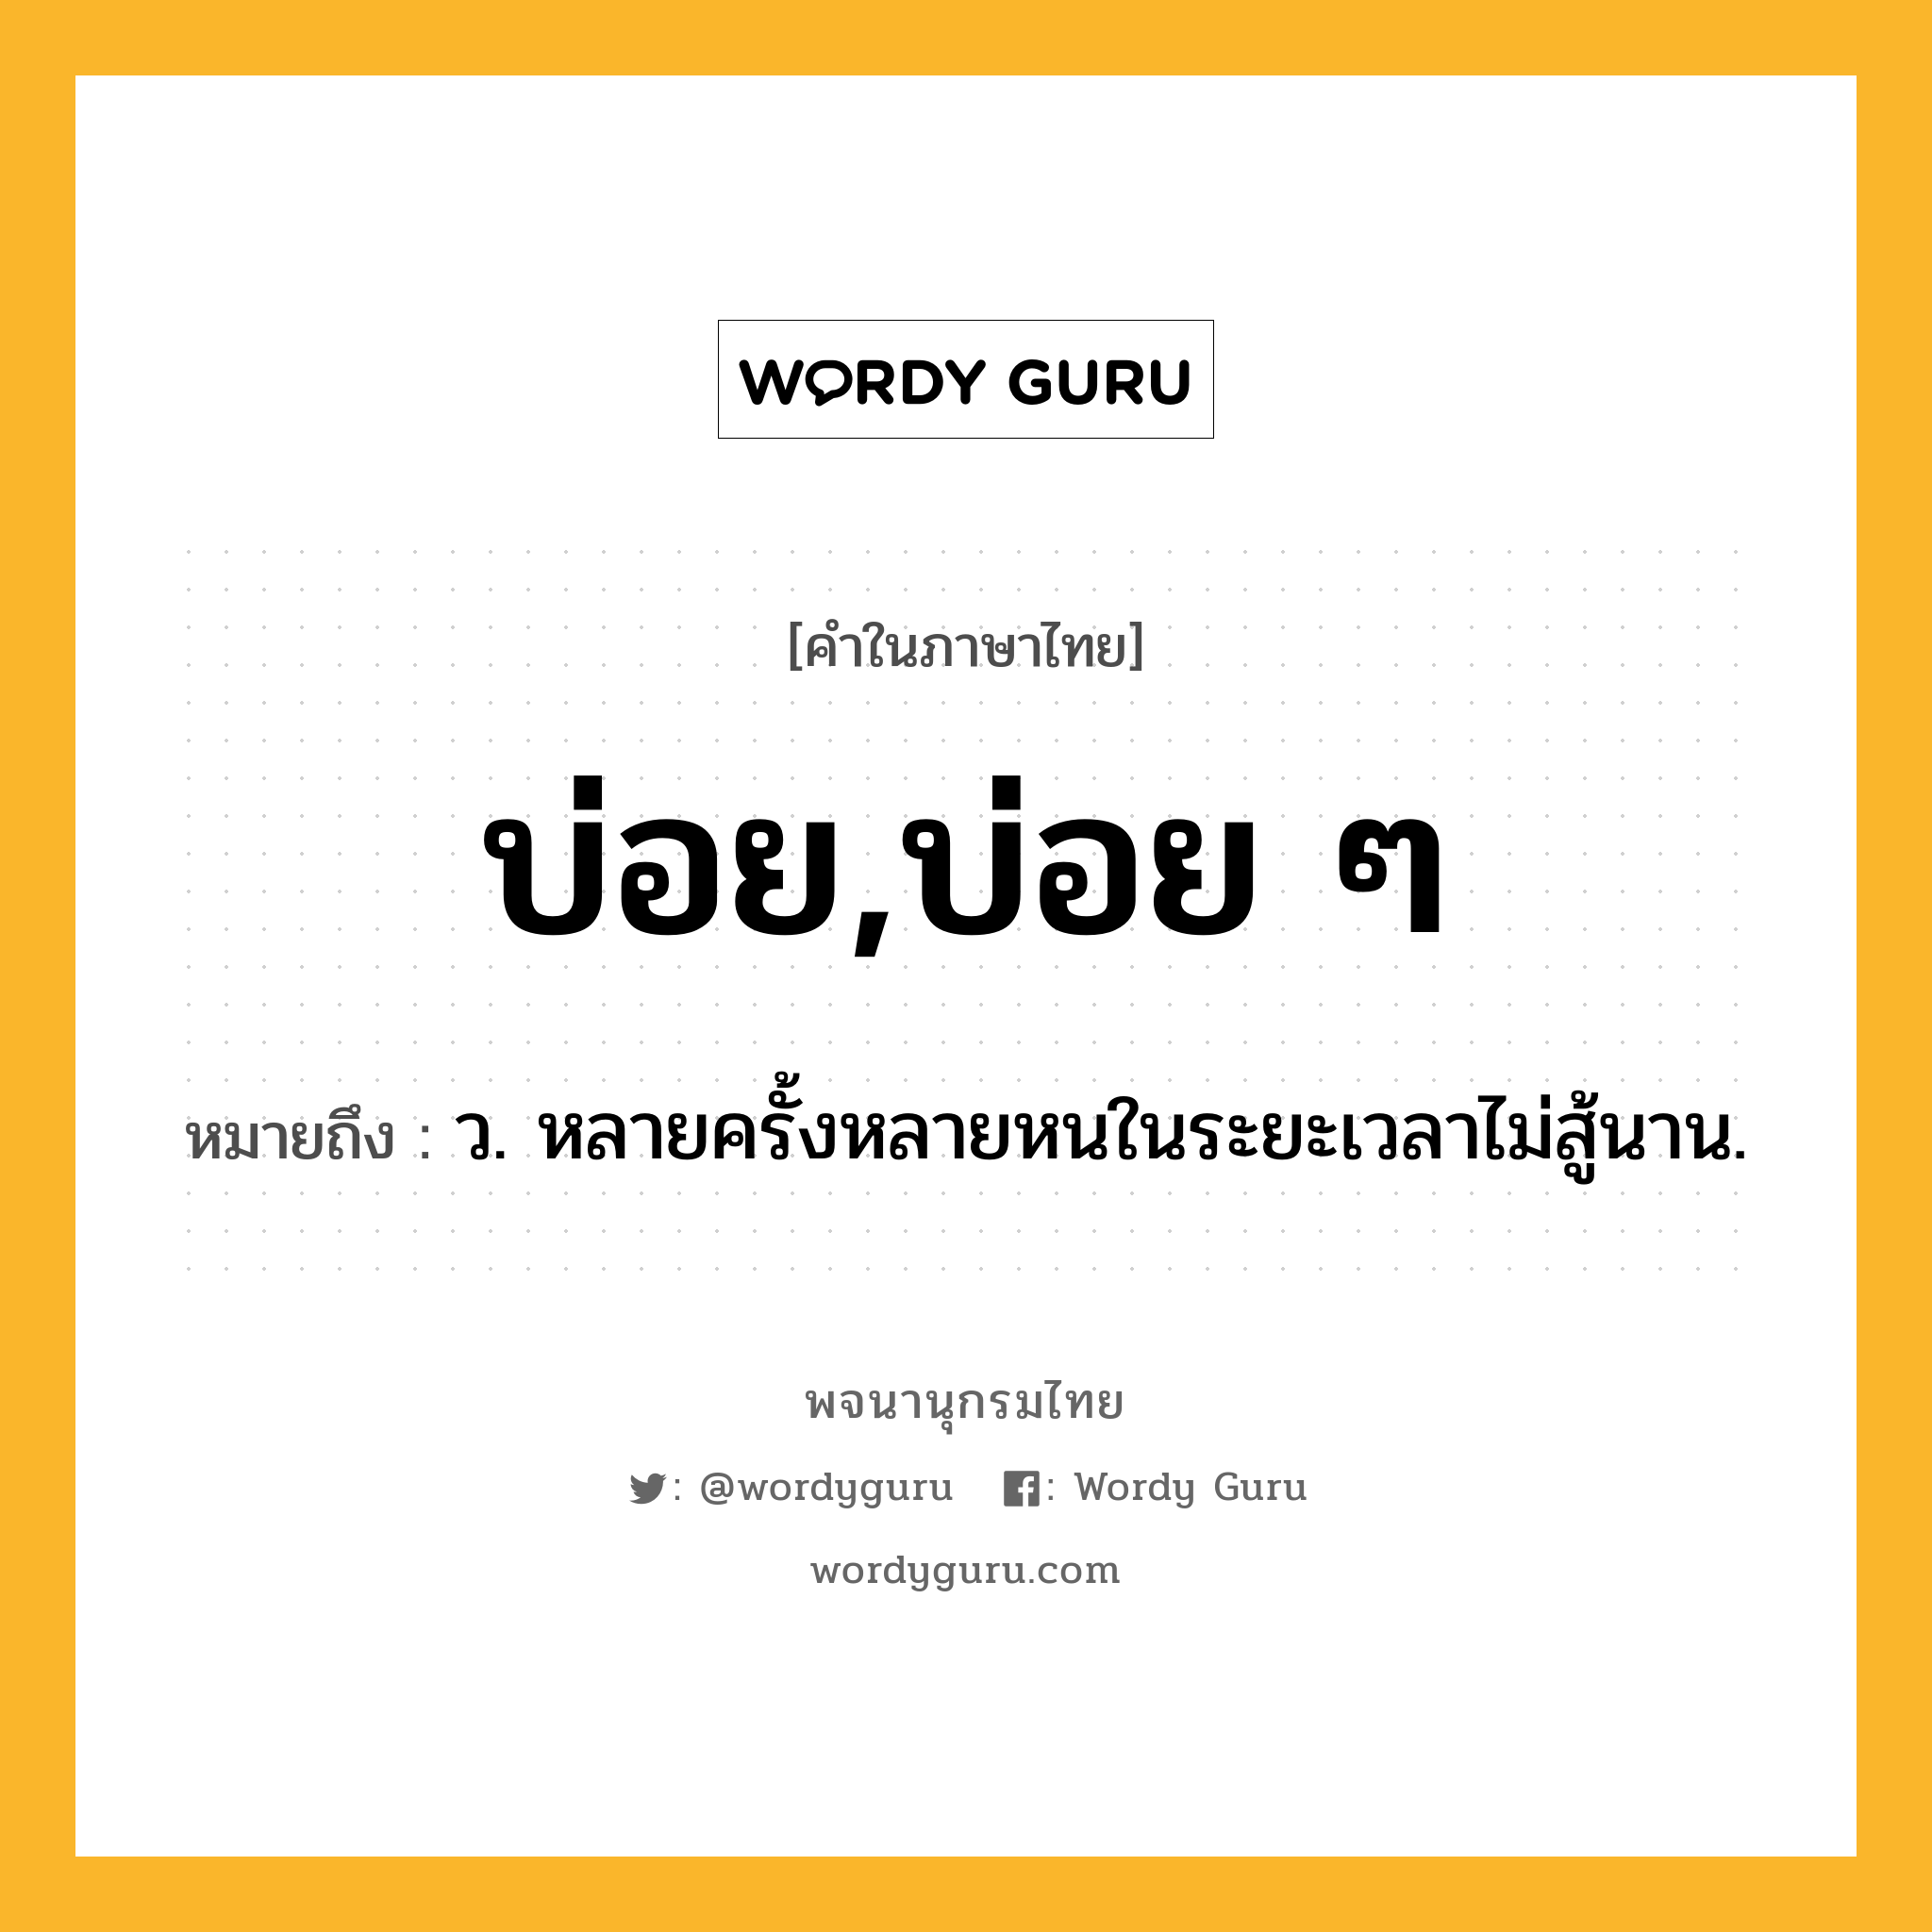 บ่อย,บ่อย ๆ ความหมาย หมายถึงอะไร?, คำในภาษาไทย บ่อย,บ่อย ๆ หมายถึง ว. หลายครั้งหลายหนในระยะเวลาไม่สู้นาน.